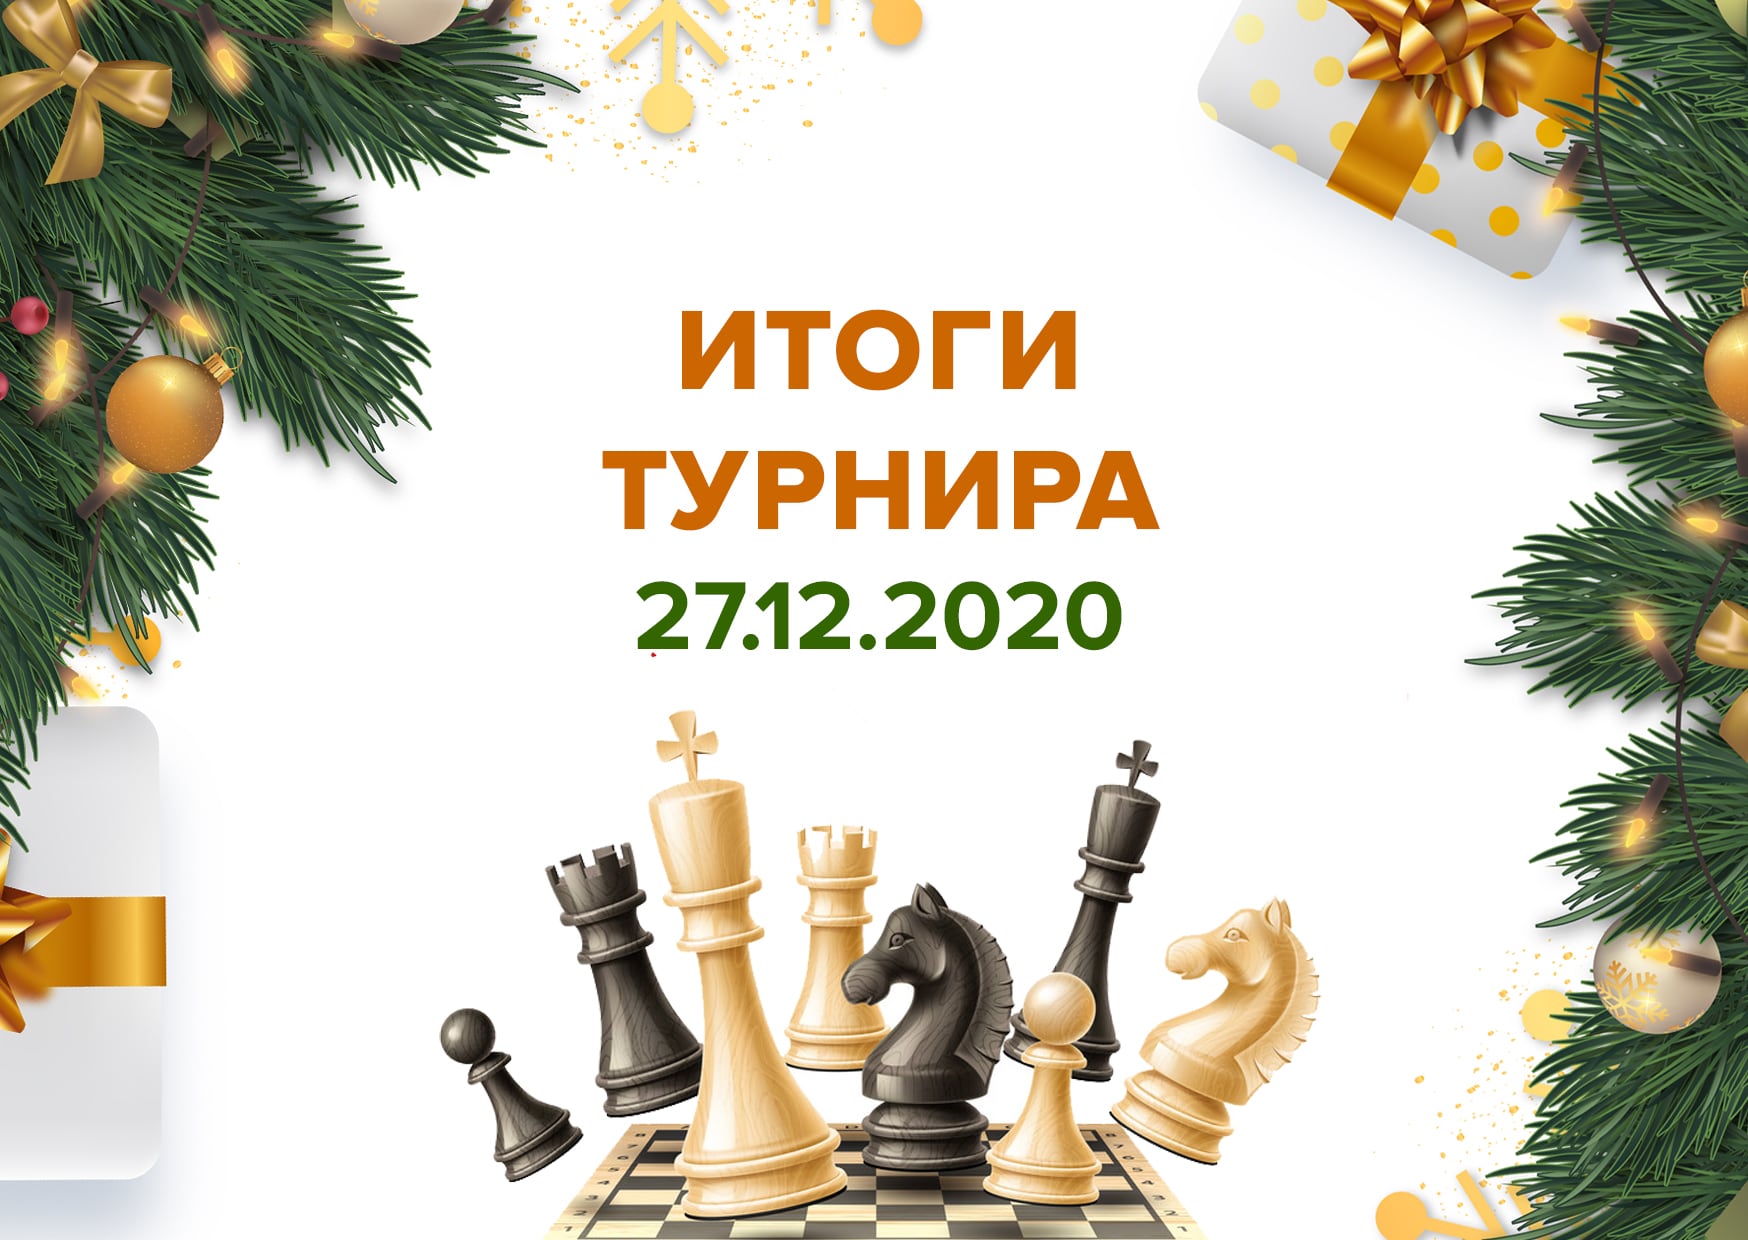 Итоги онлайн-турнира по шахматам 27.12.20